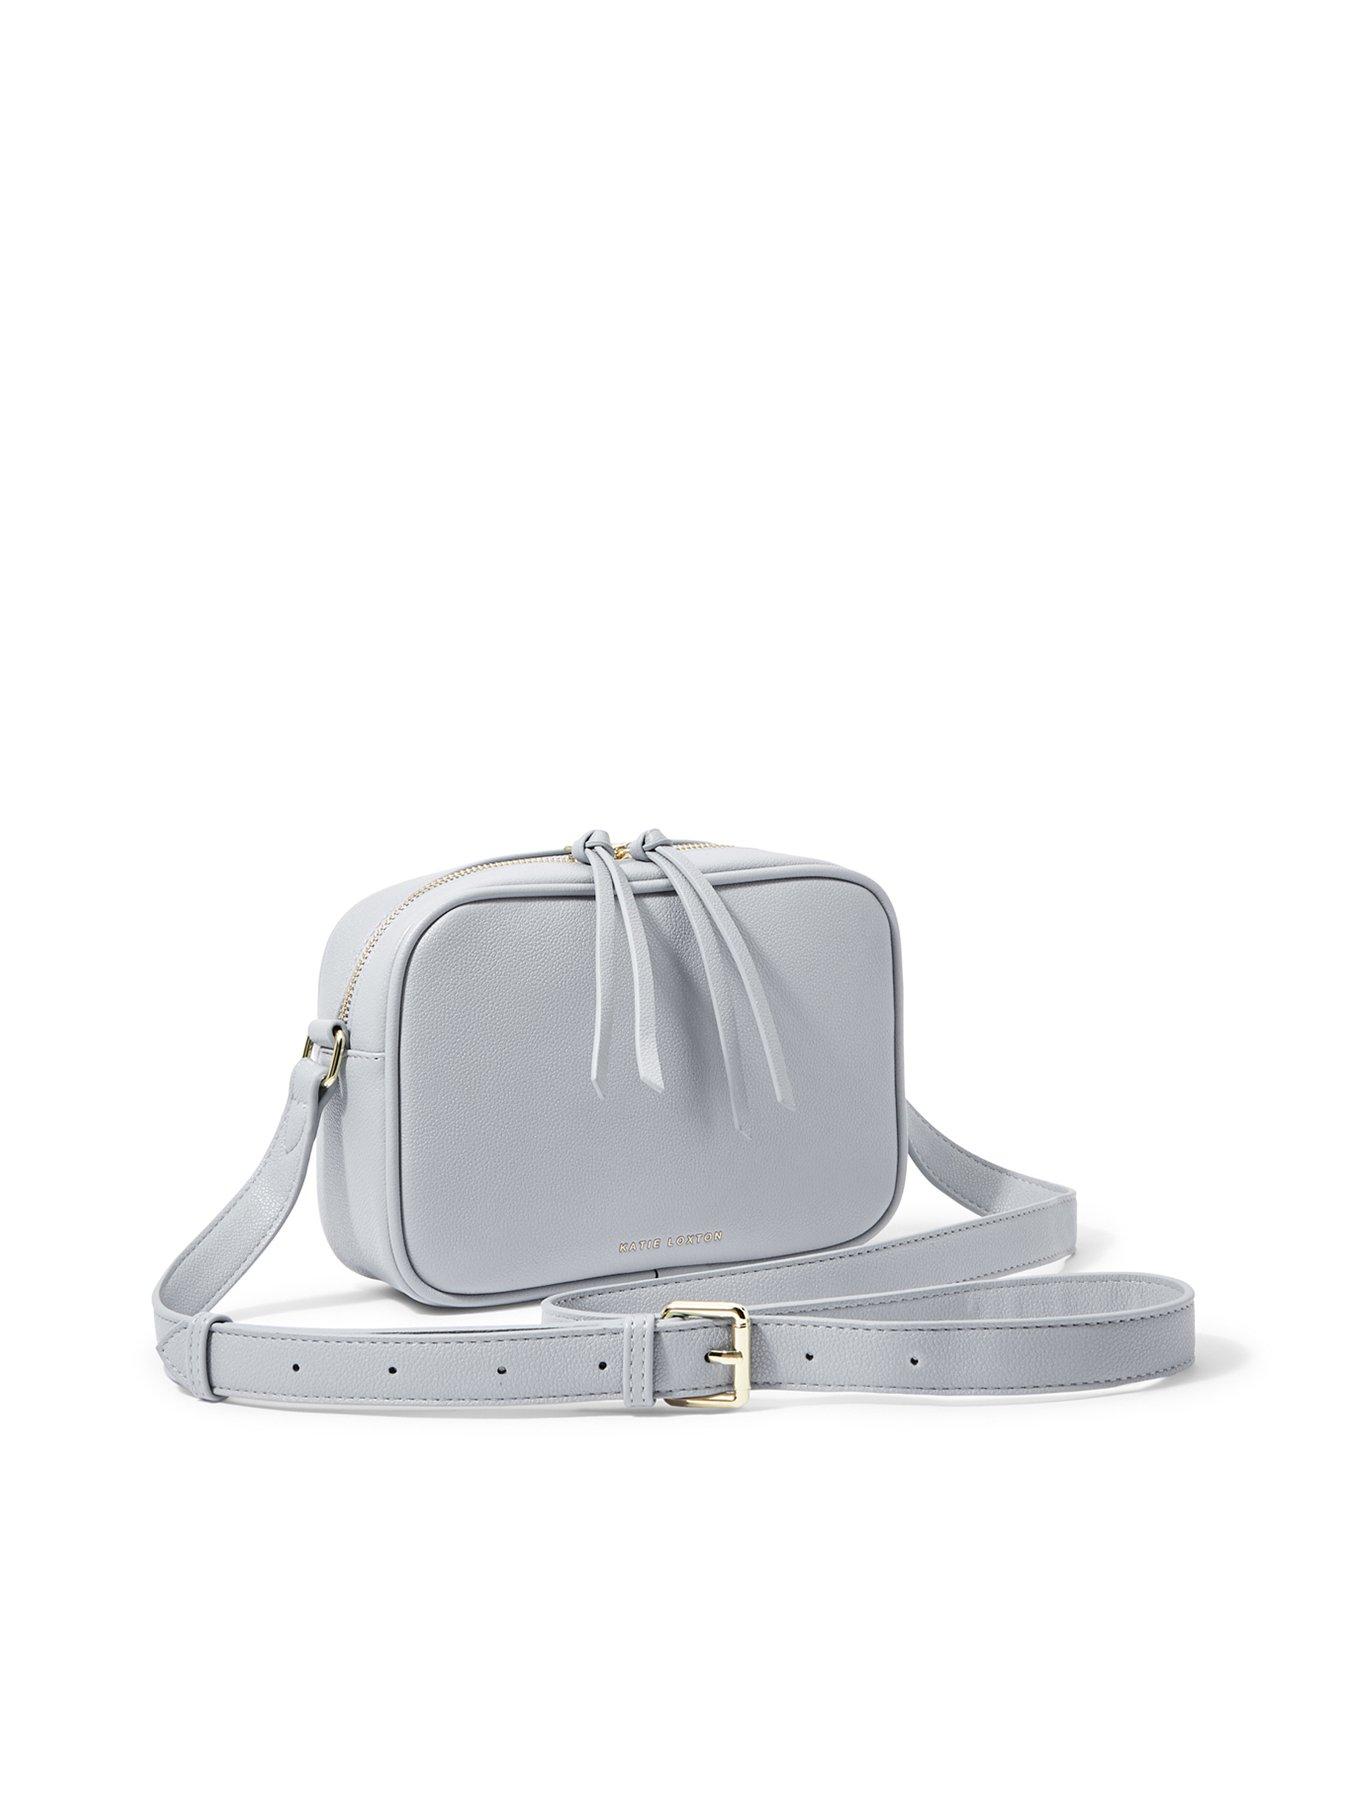 White Stuff Sebby Leather Sling Bag - Navy - Women